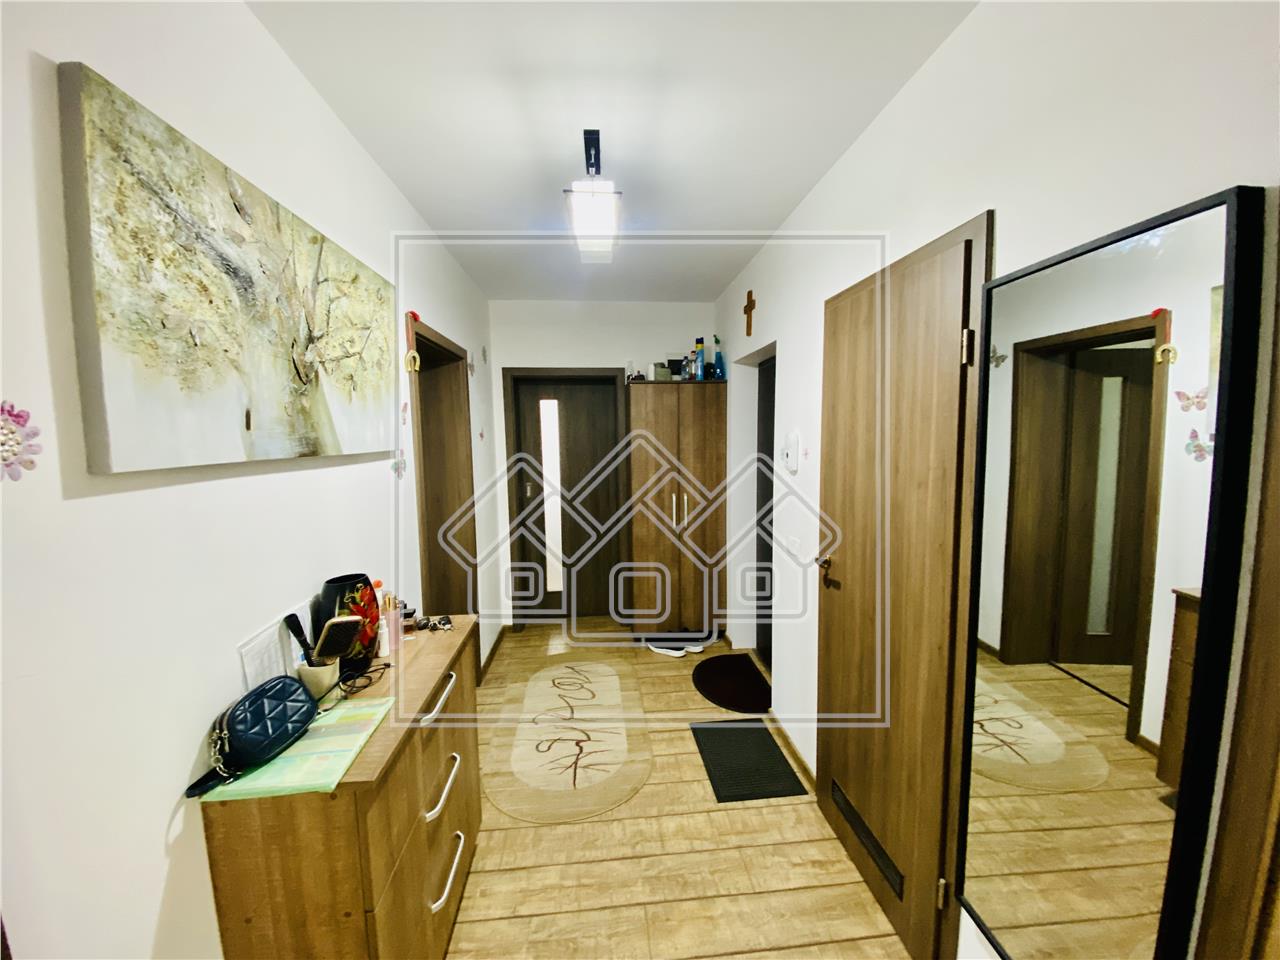 Apartament de vanzare in Sibiu - 65 mp utili - etaj 1/2 - Lazaret